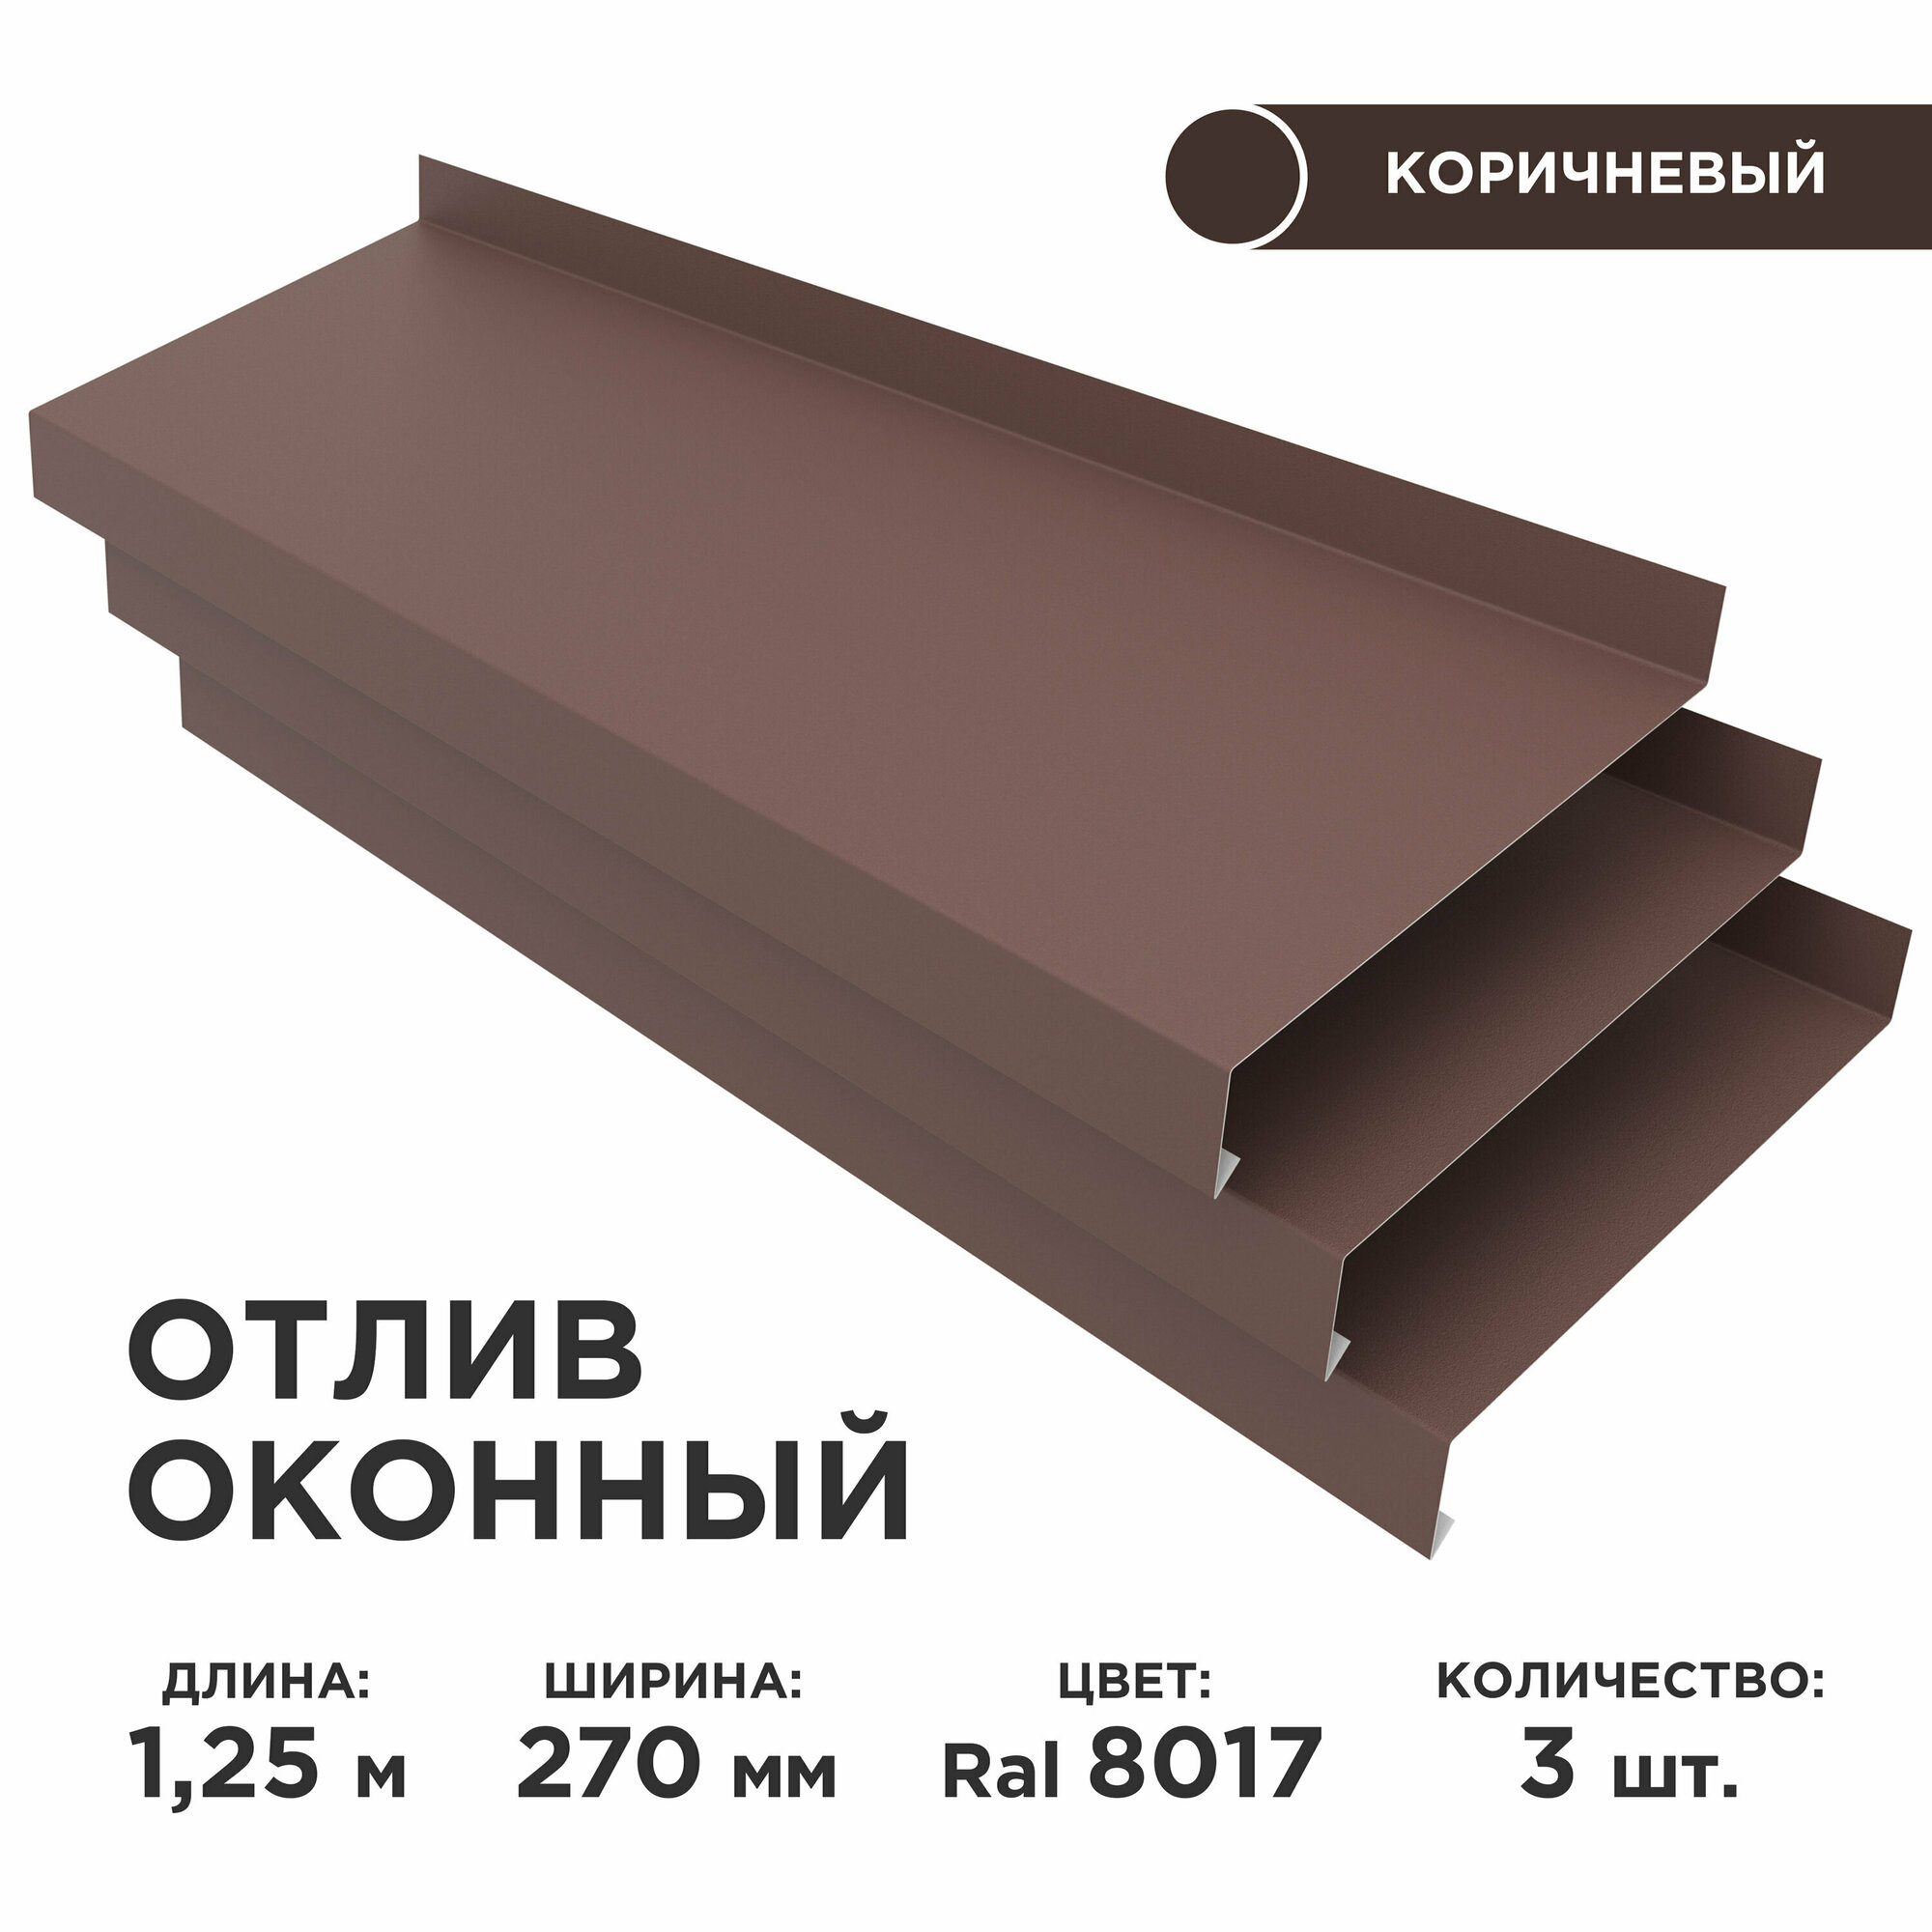 Отлив оконный ширина полки 270мм/ отлив для окна / цвет коричневый(RAL 8017) Длина 125м 3 штуки в комплекте